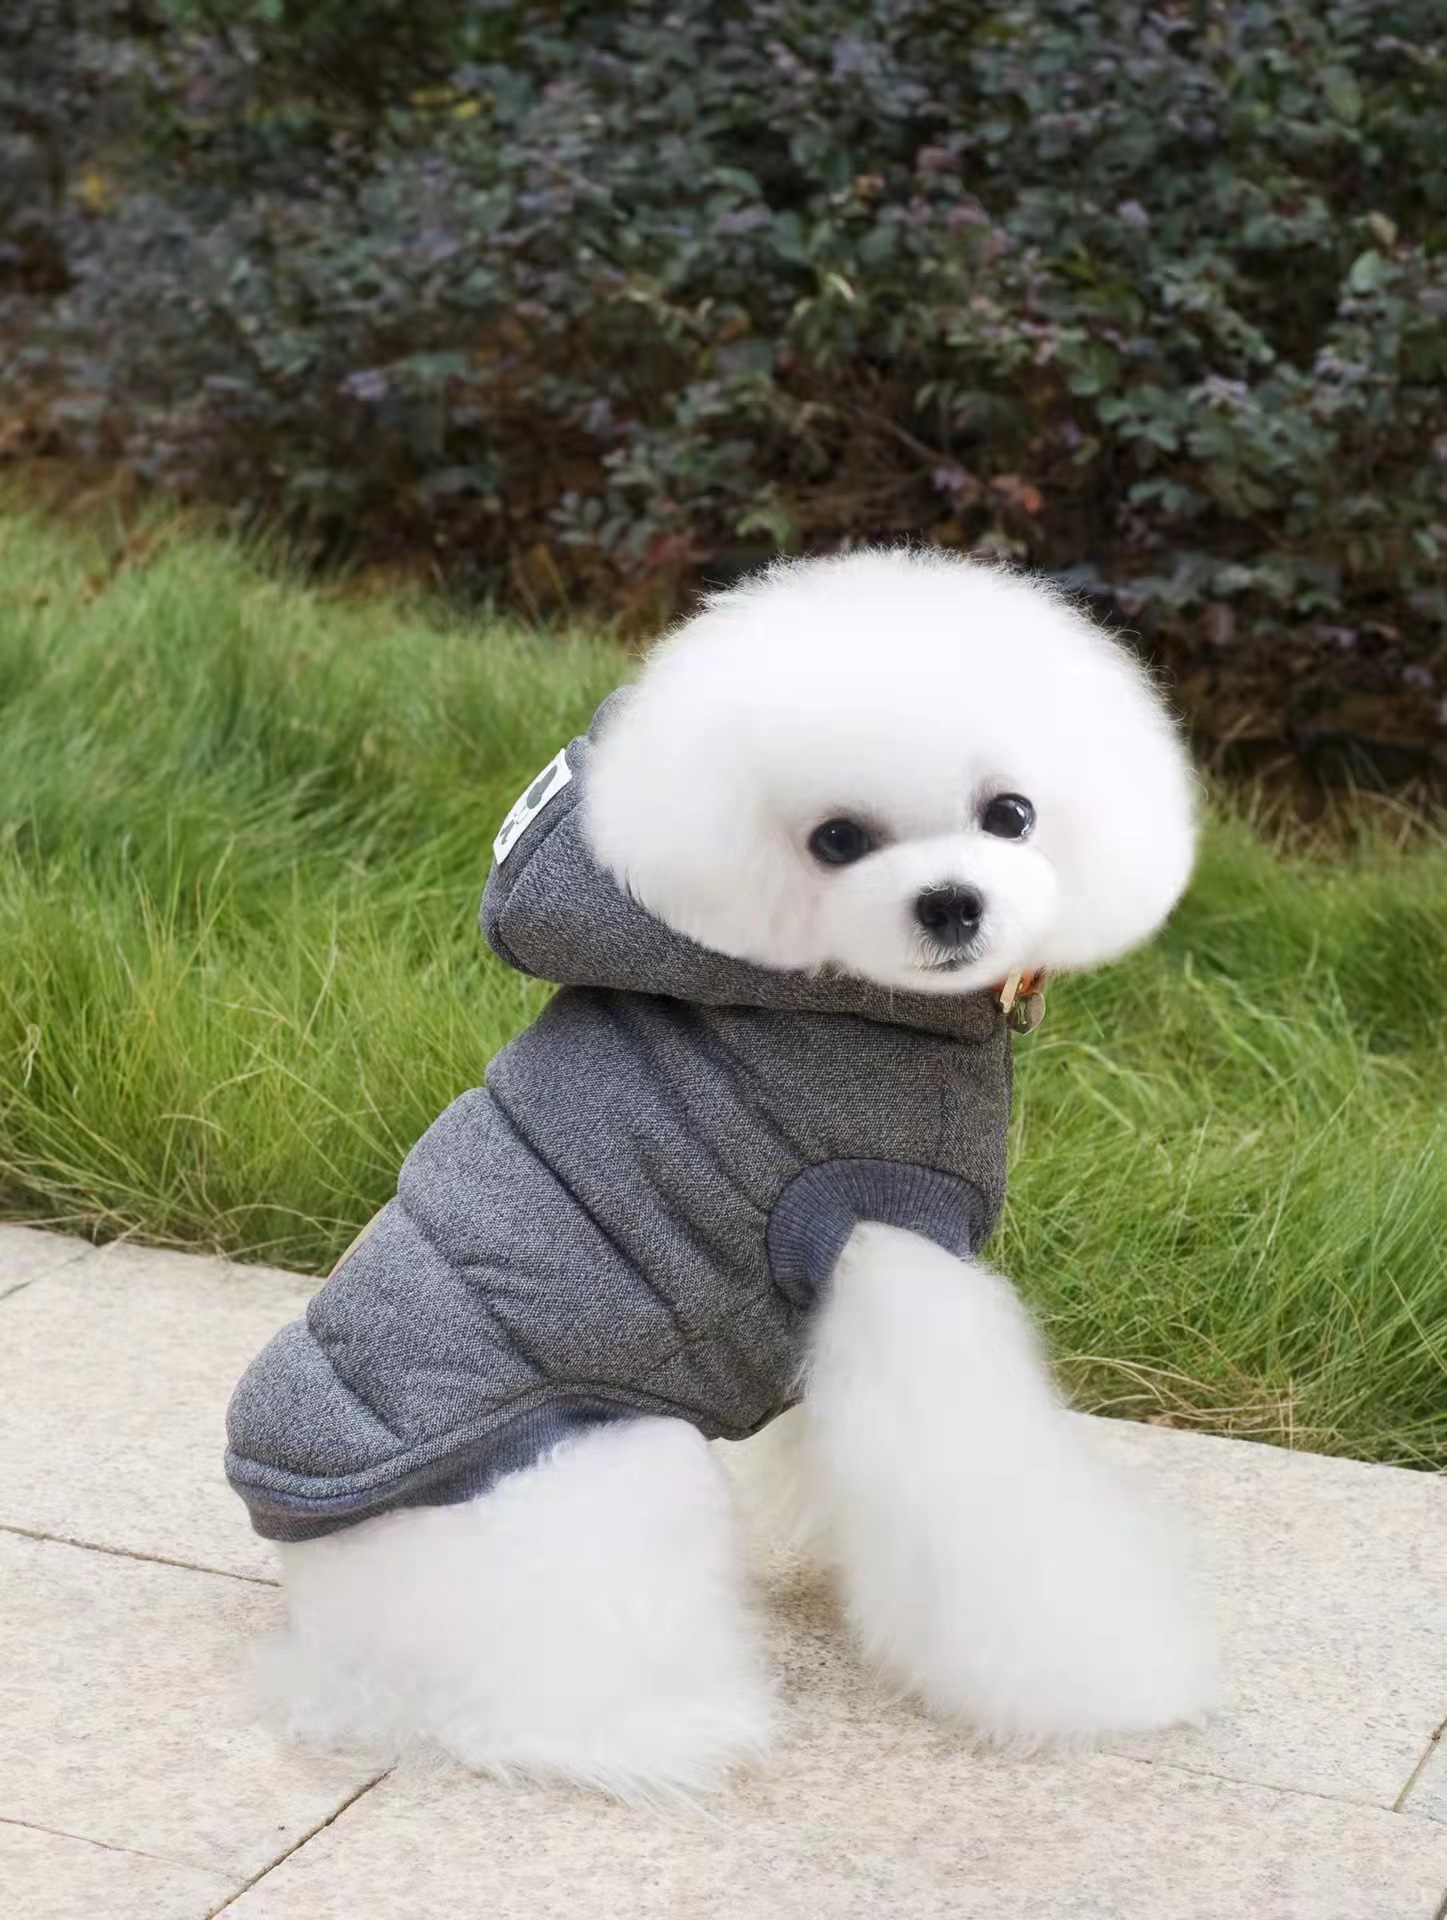 Pet Products Dog Clothing Coat Jacket Hoodie Sweater Big Dog